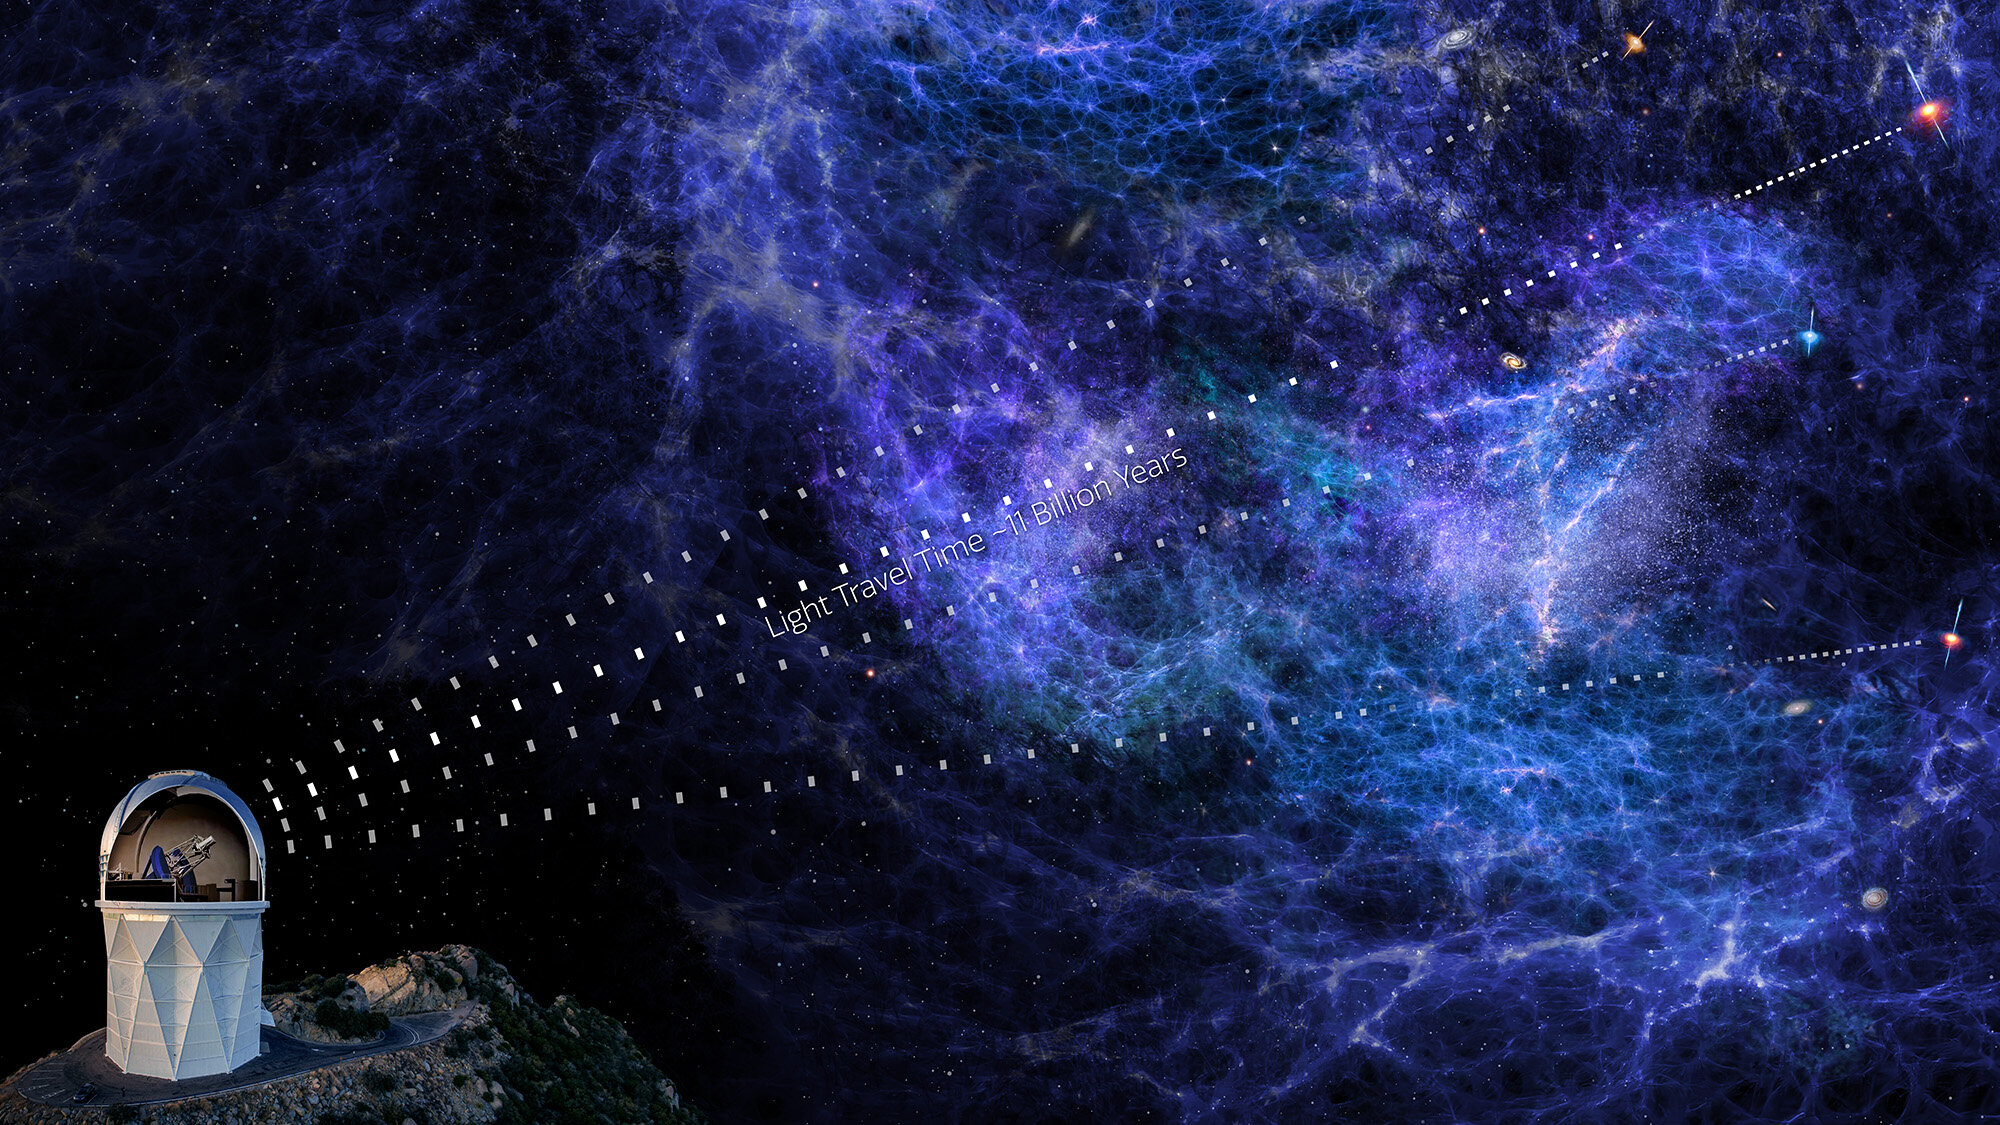  На этой иллюстрации художника показан свет квазаров, проходящий через межгалактические облака водородного газа. Исследователи могут проанализировать этот свет, чтобы разобраться в крупномасштабной структуре Вселенной